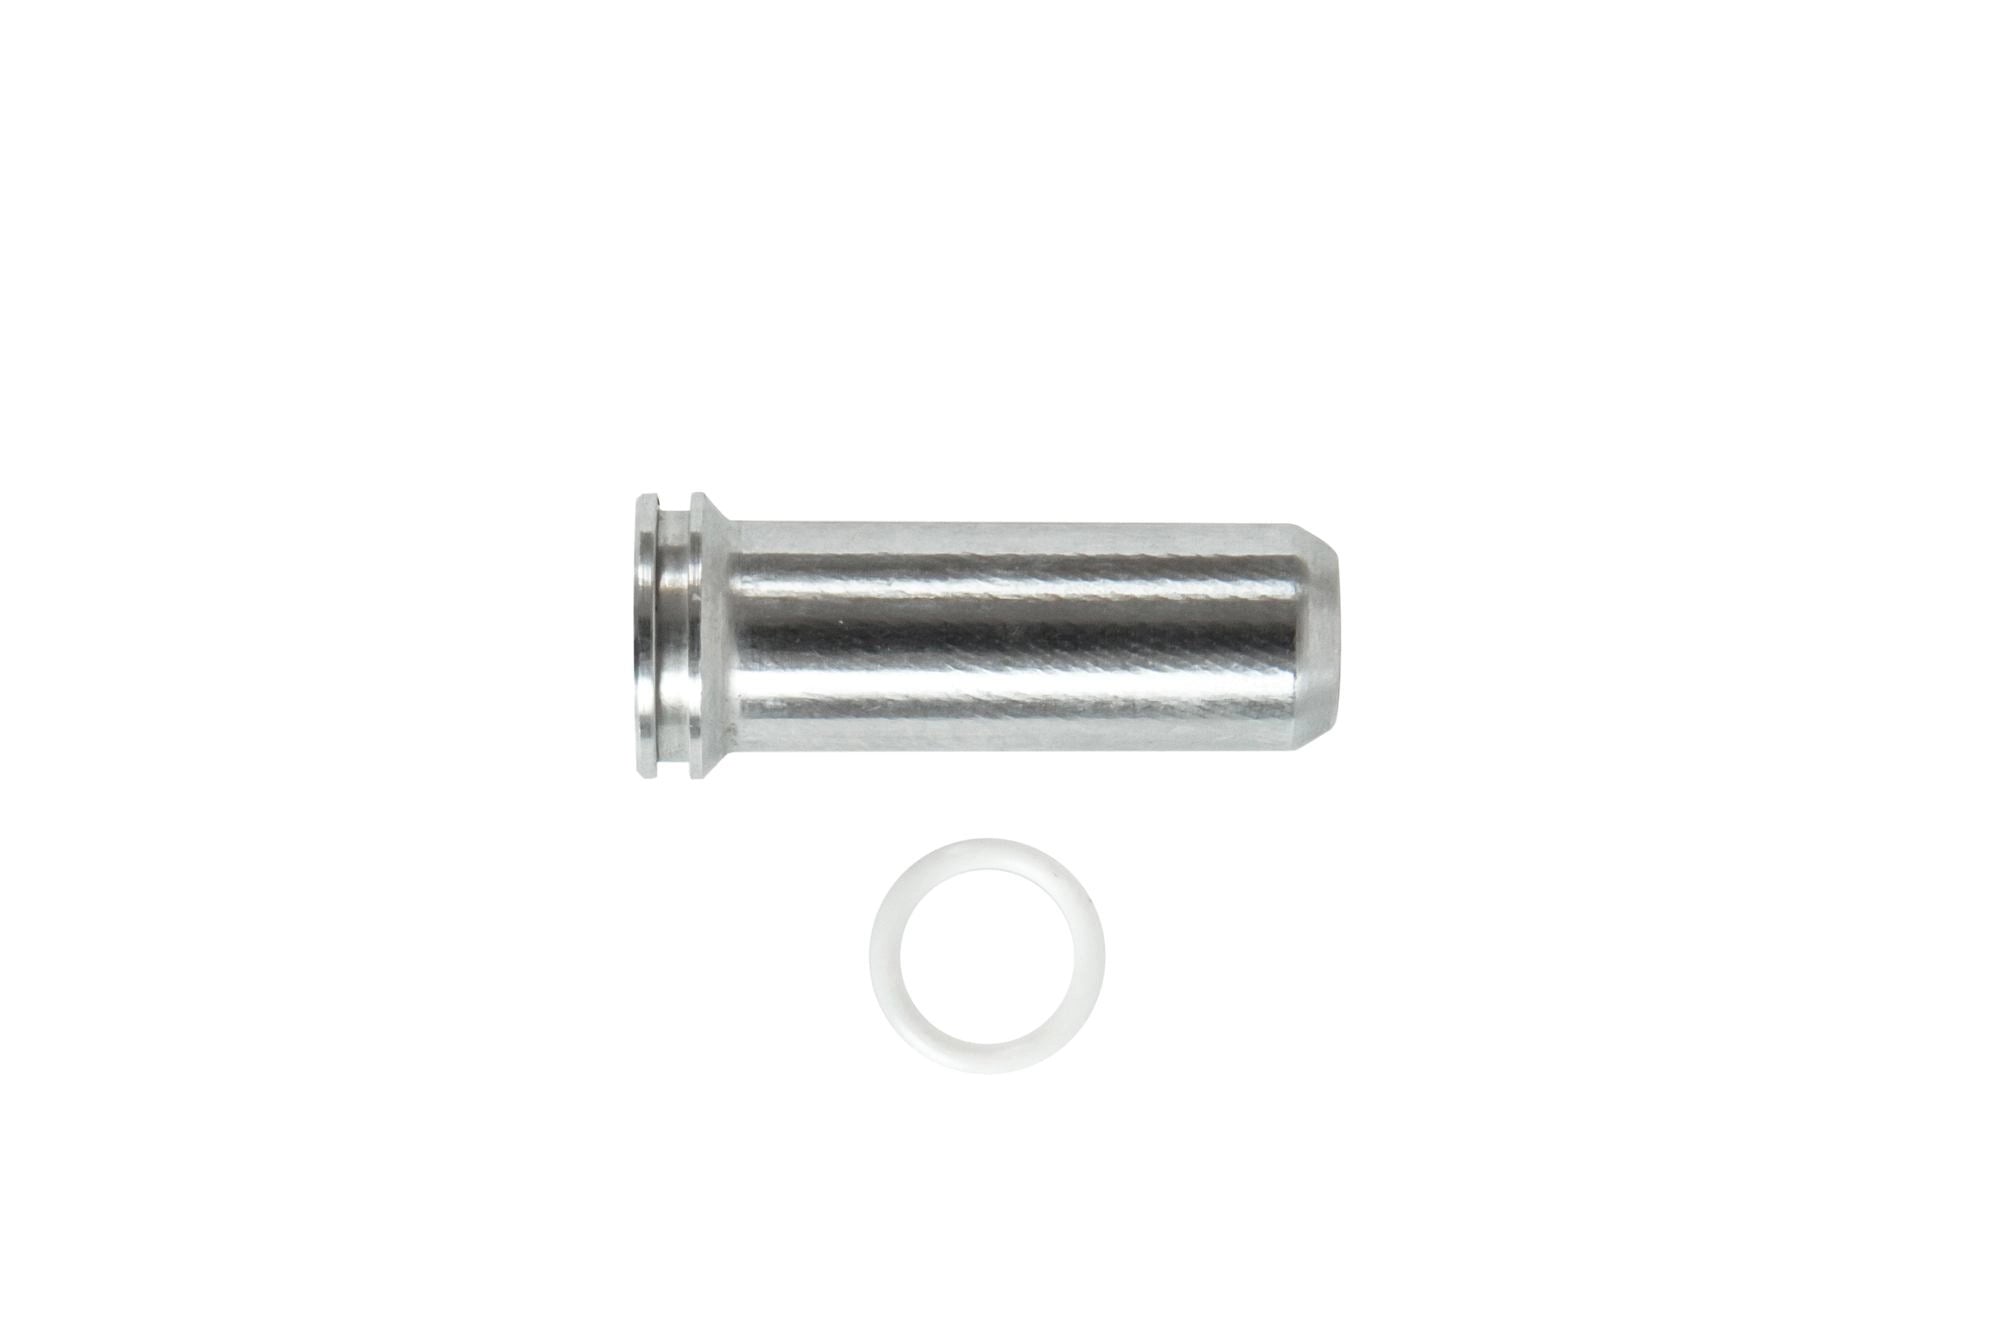 Aluminum CNC Nozzle - 34.9 mm